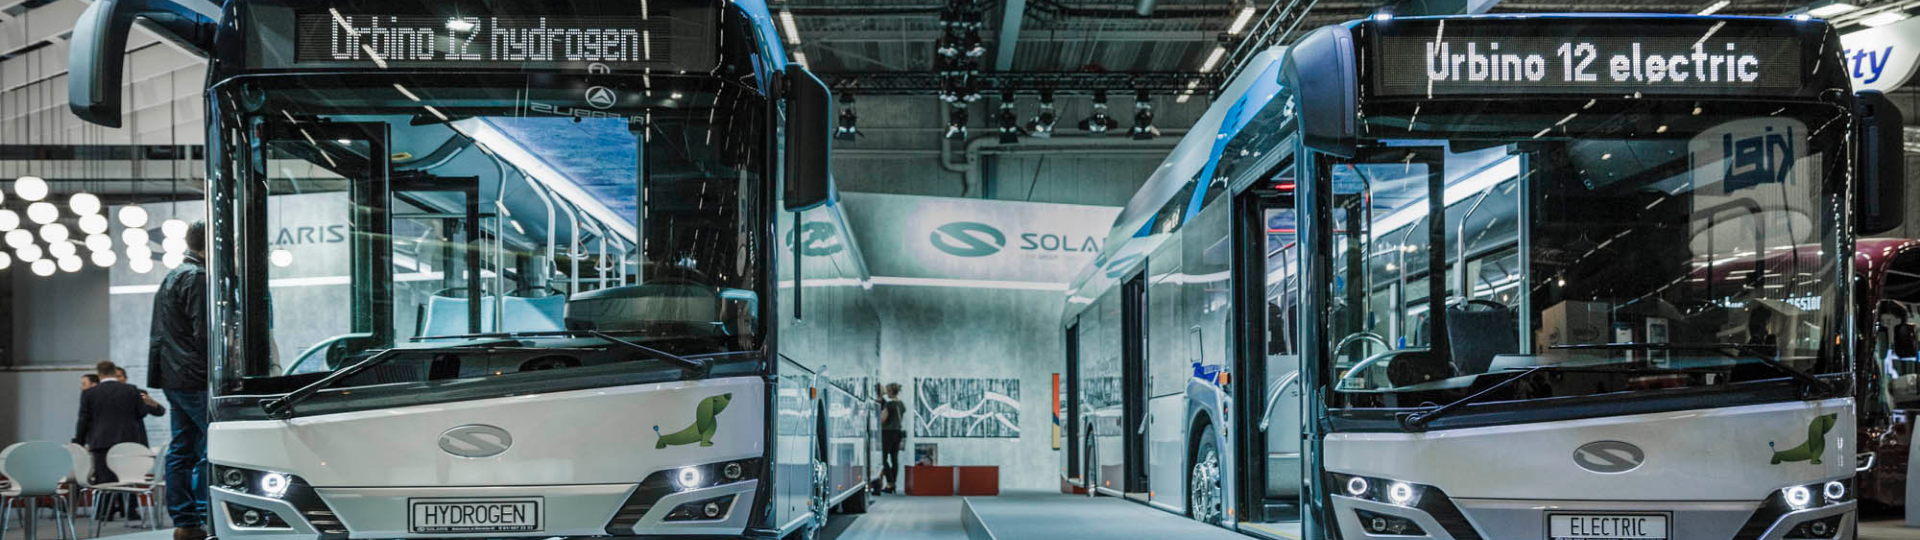 UITP Global Public Transport Summit 2019:  Solaris erweitert sein Elektromobilitätsangebot um Wasserstoffbus